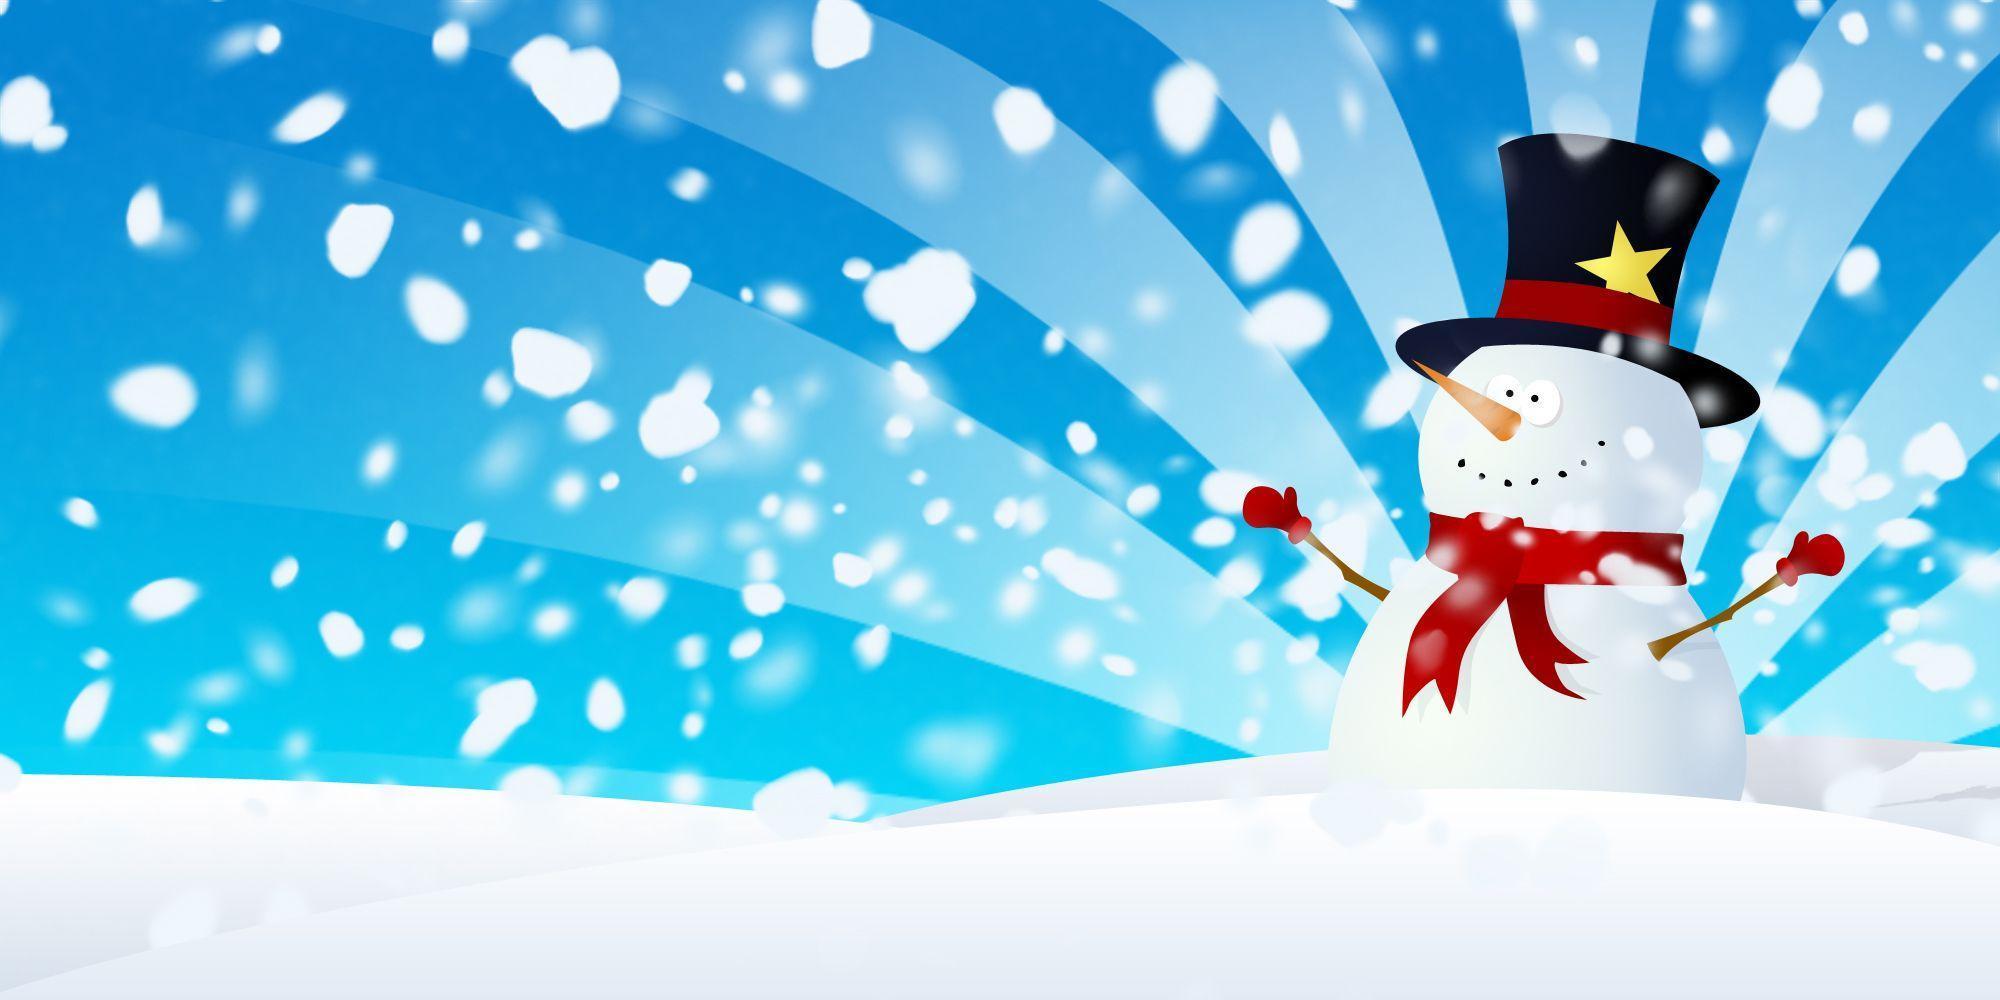 Snowman Wallpaper Fullscreen HD Wallpaper. Cool